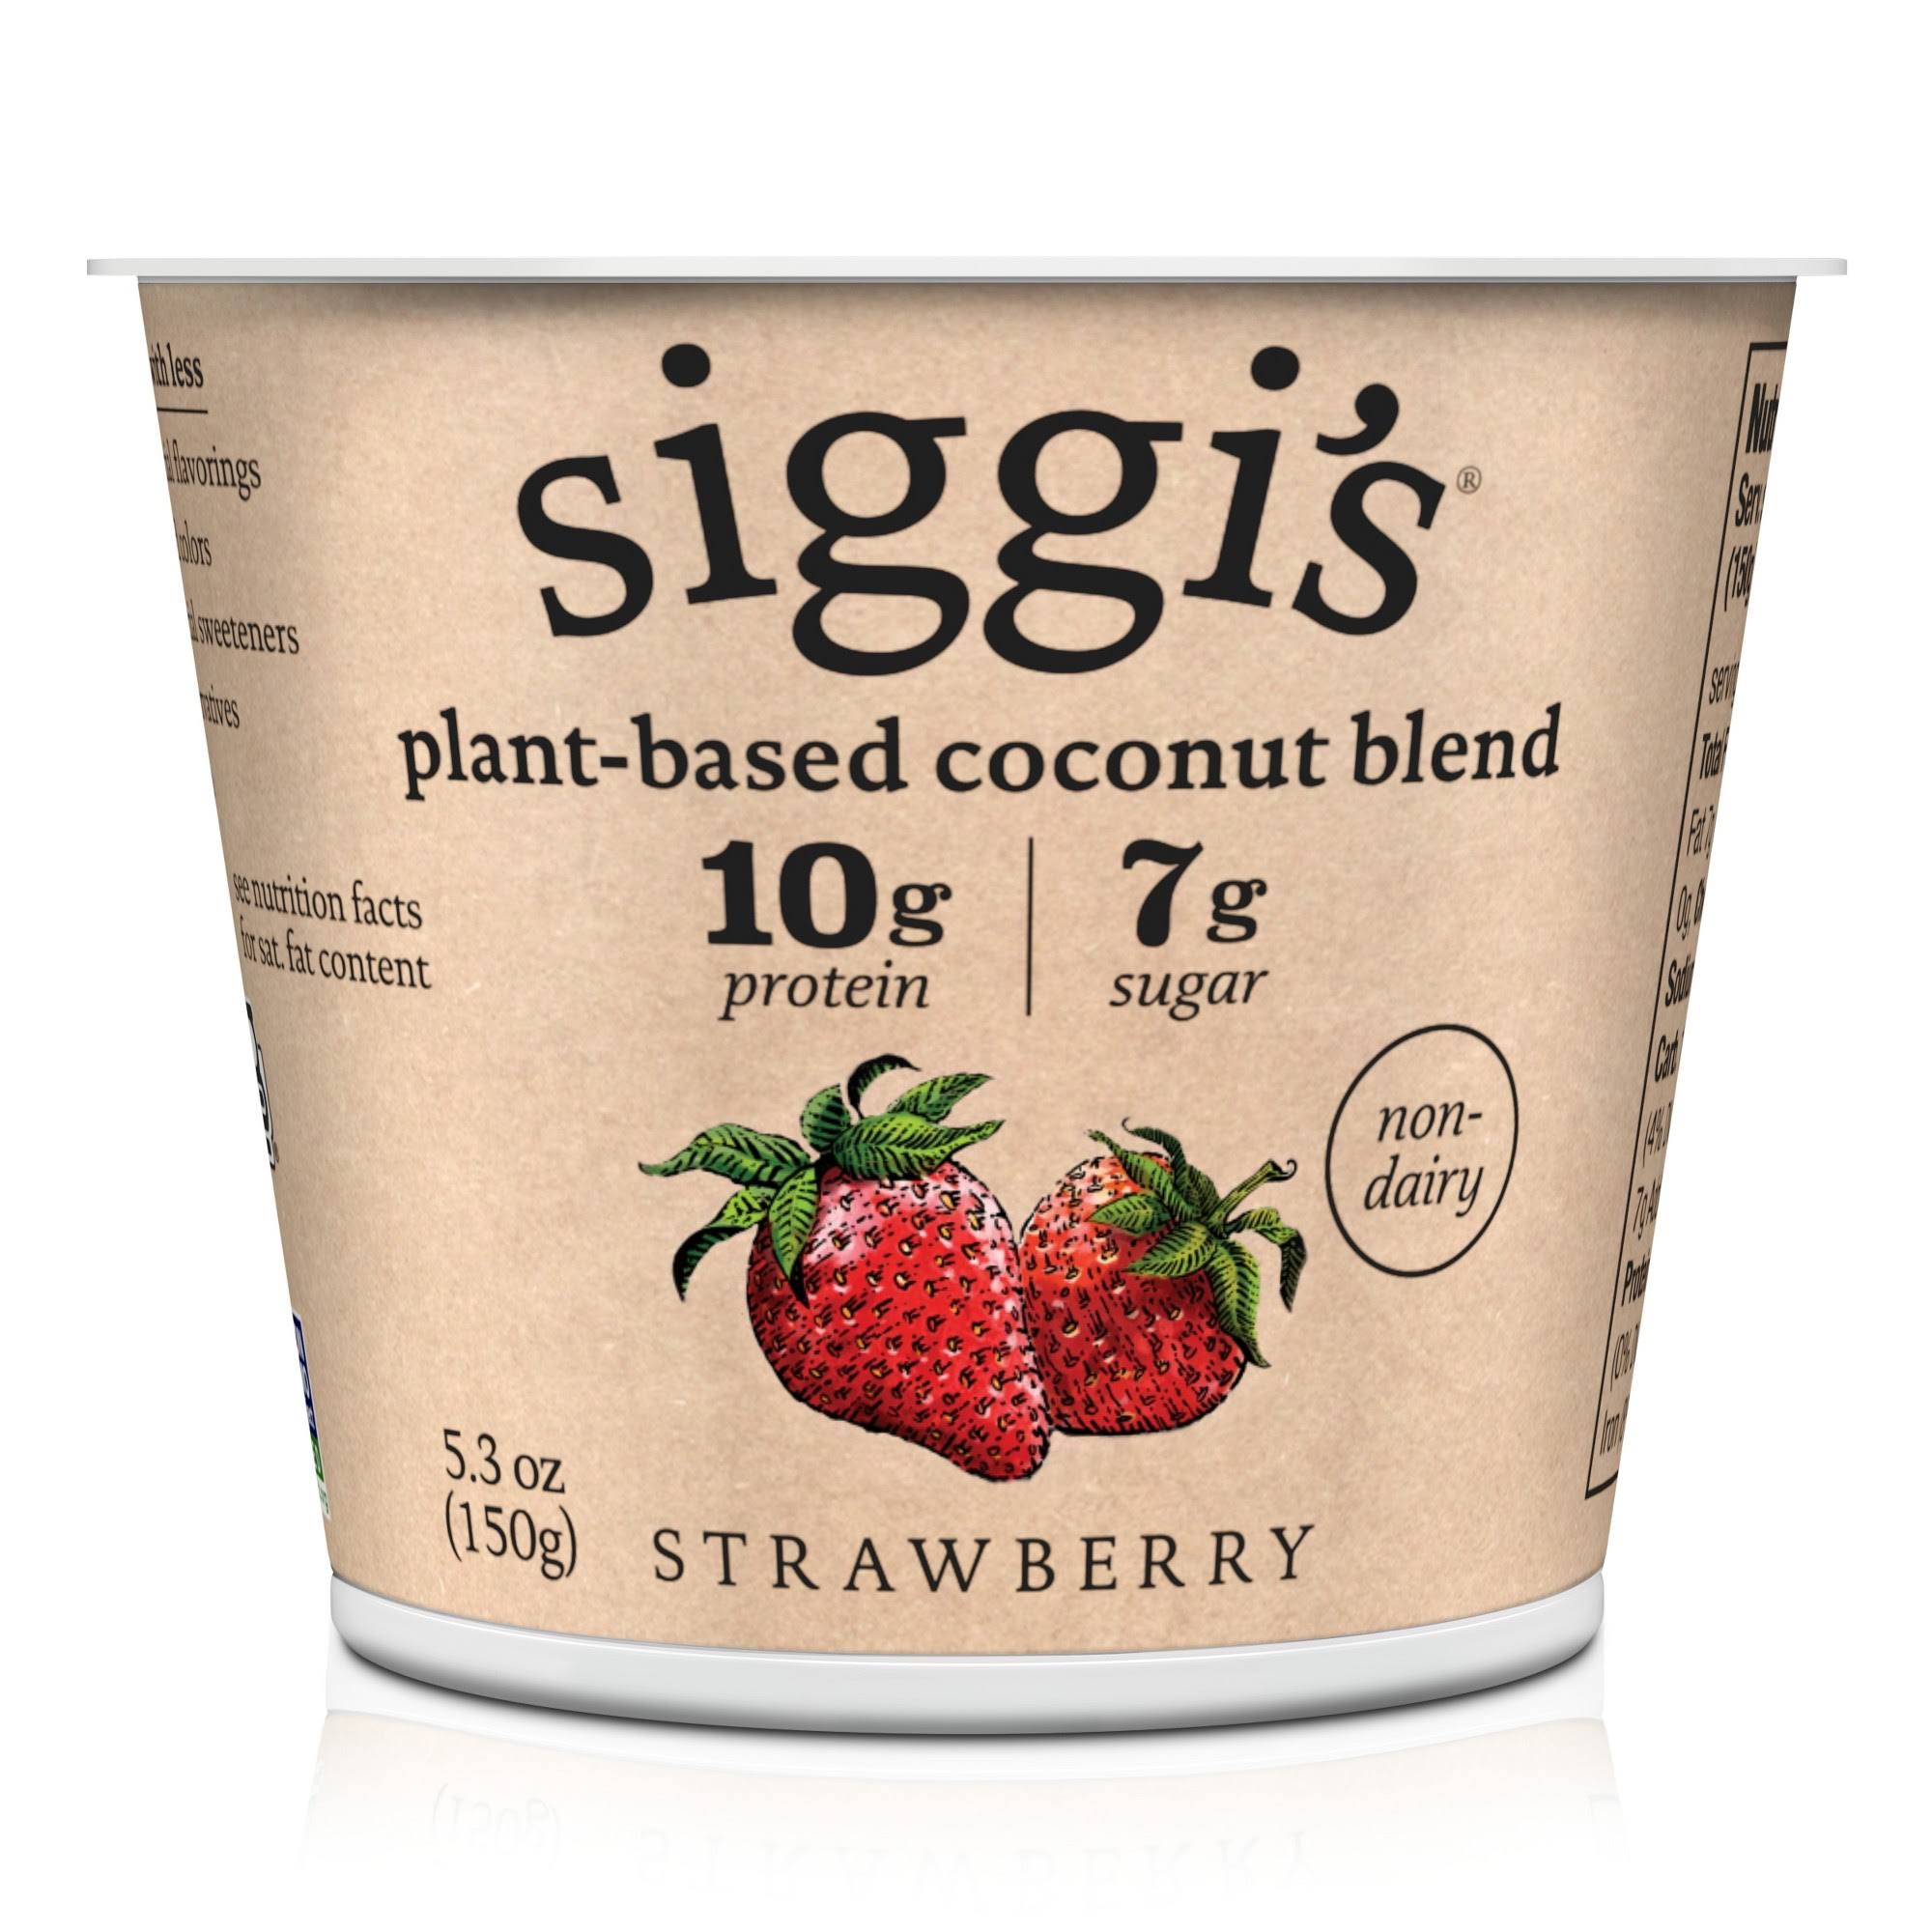 Siggi's Coconut Blend, Plant-Based, Non-Dairy, Strawberry - 5.3 oz